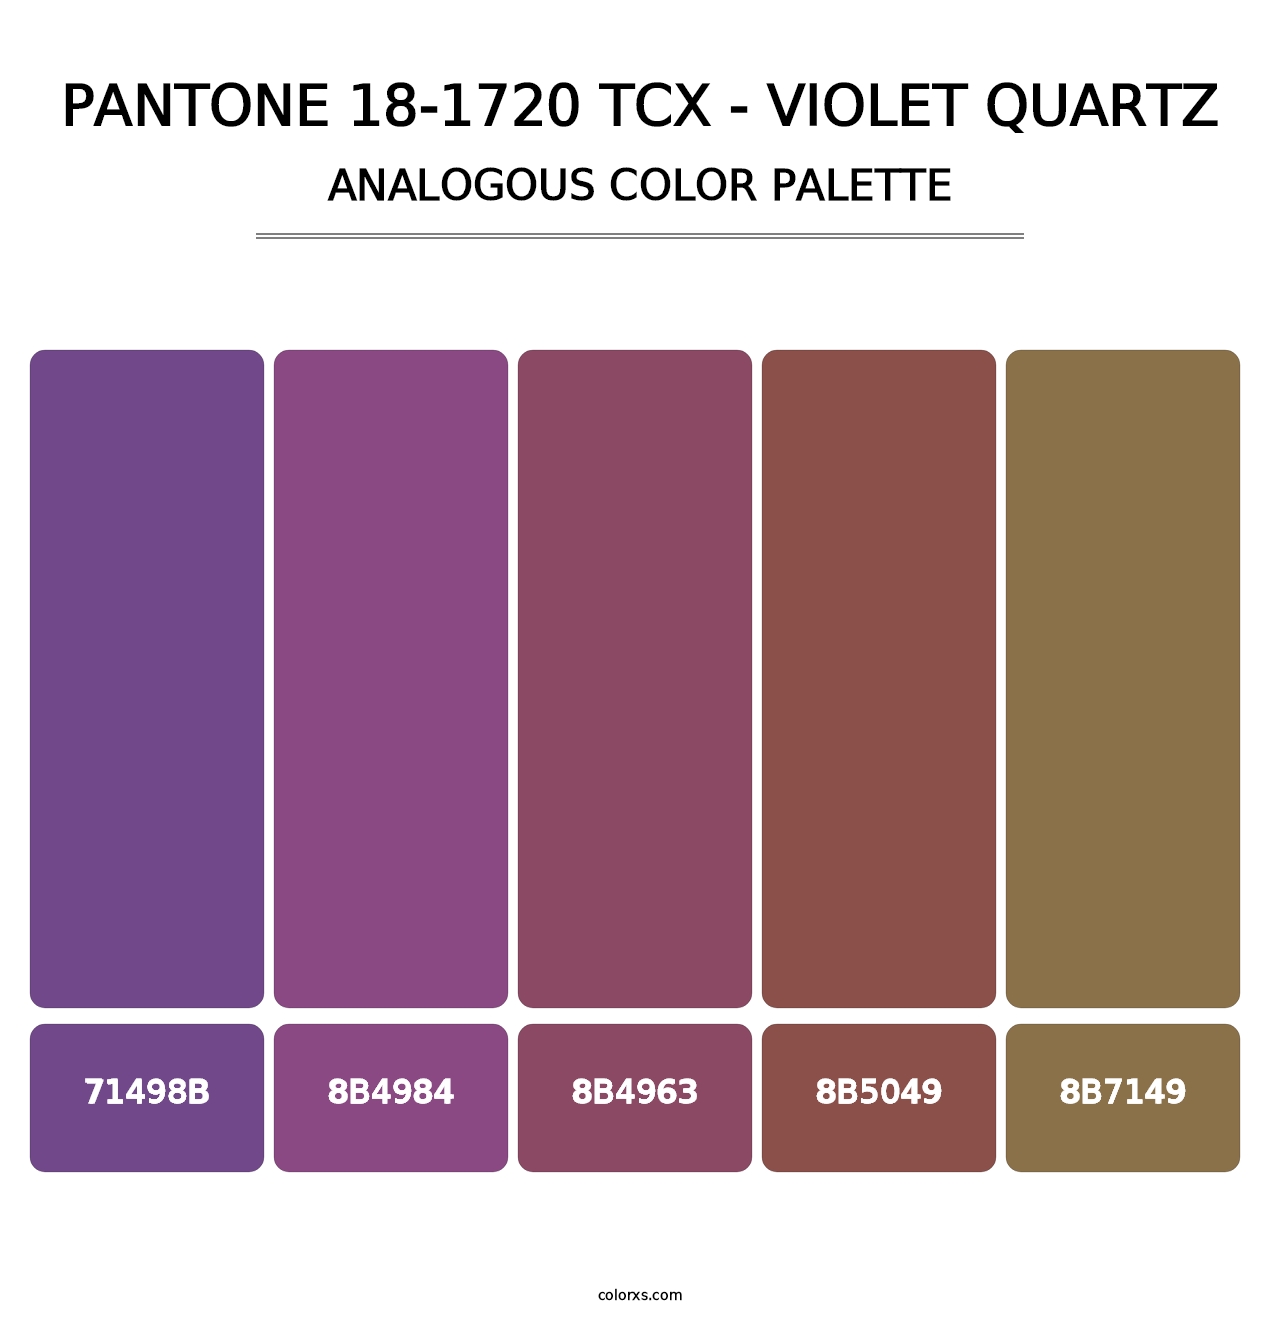 PANTONE 18-1720 TCX - Violet Quartz - Analogous Color Palette